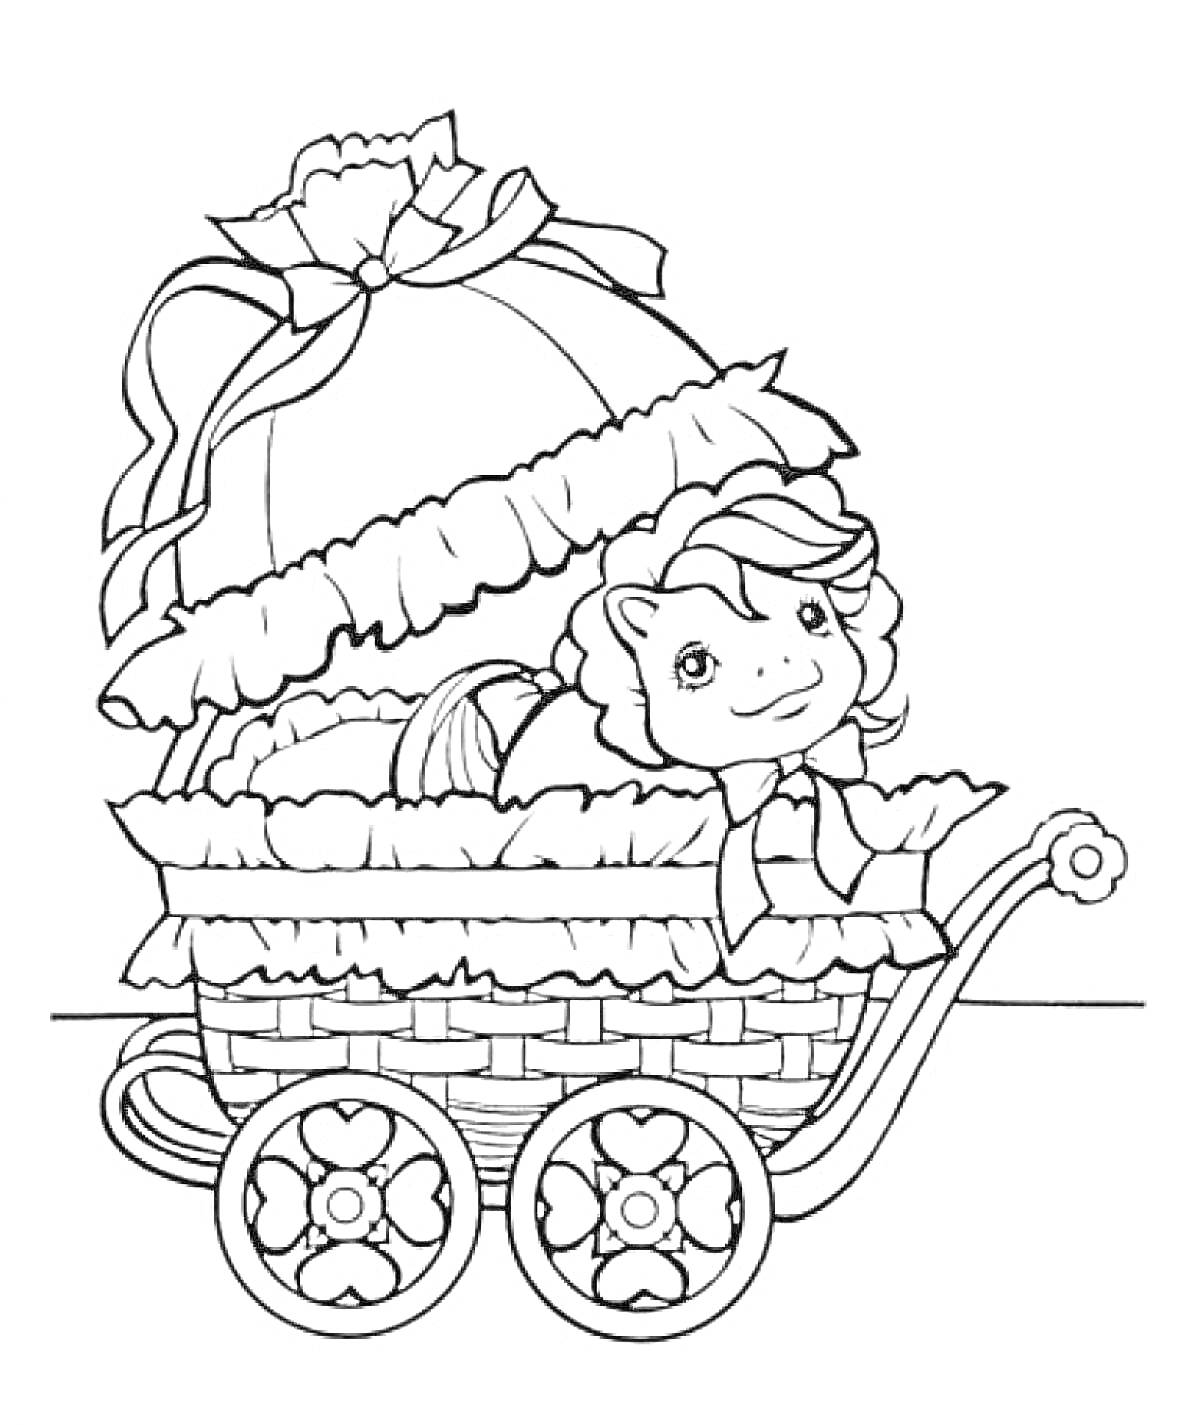 Коляска с игрушкой в виде пони, декоративными элементами и кружевами